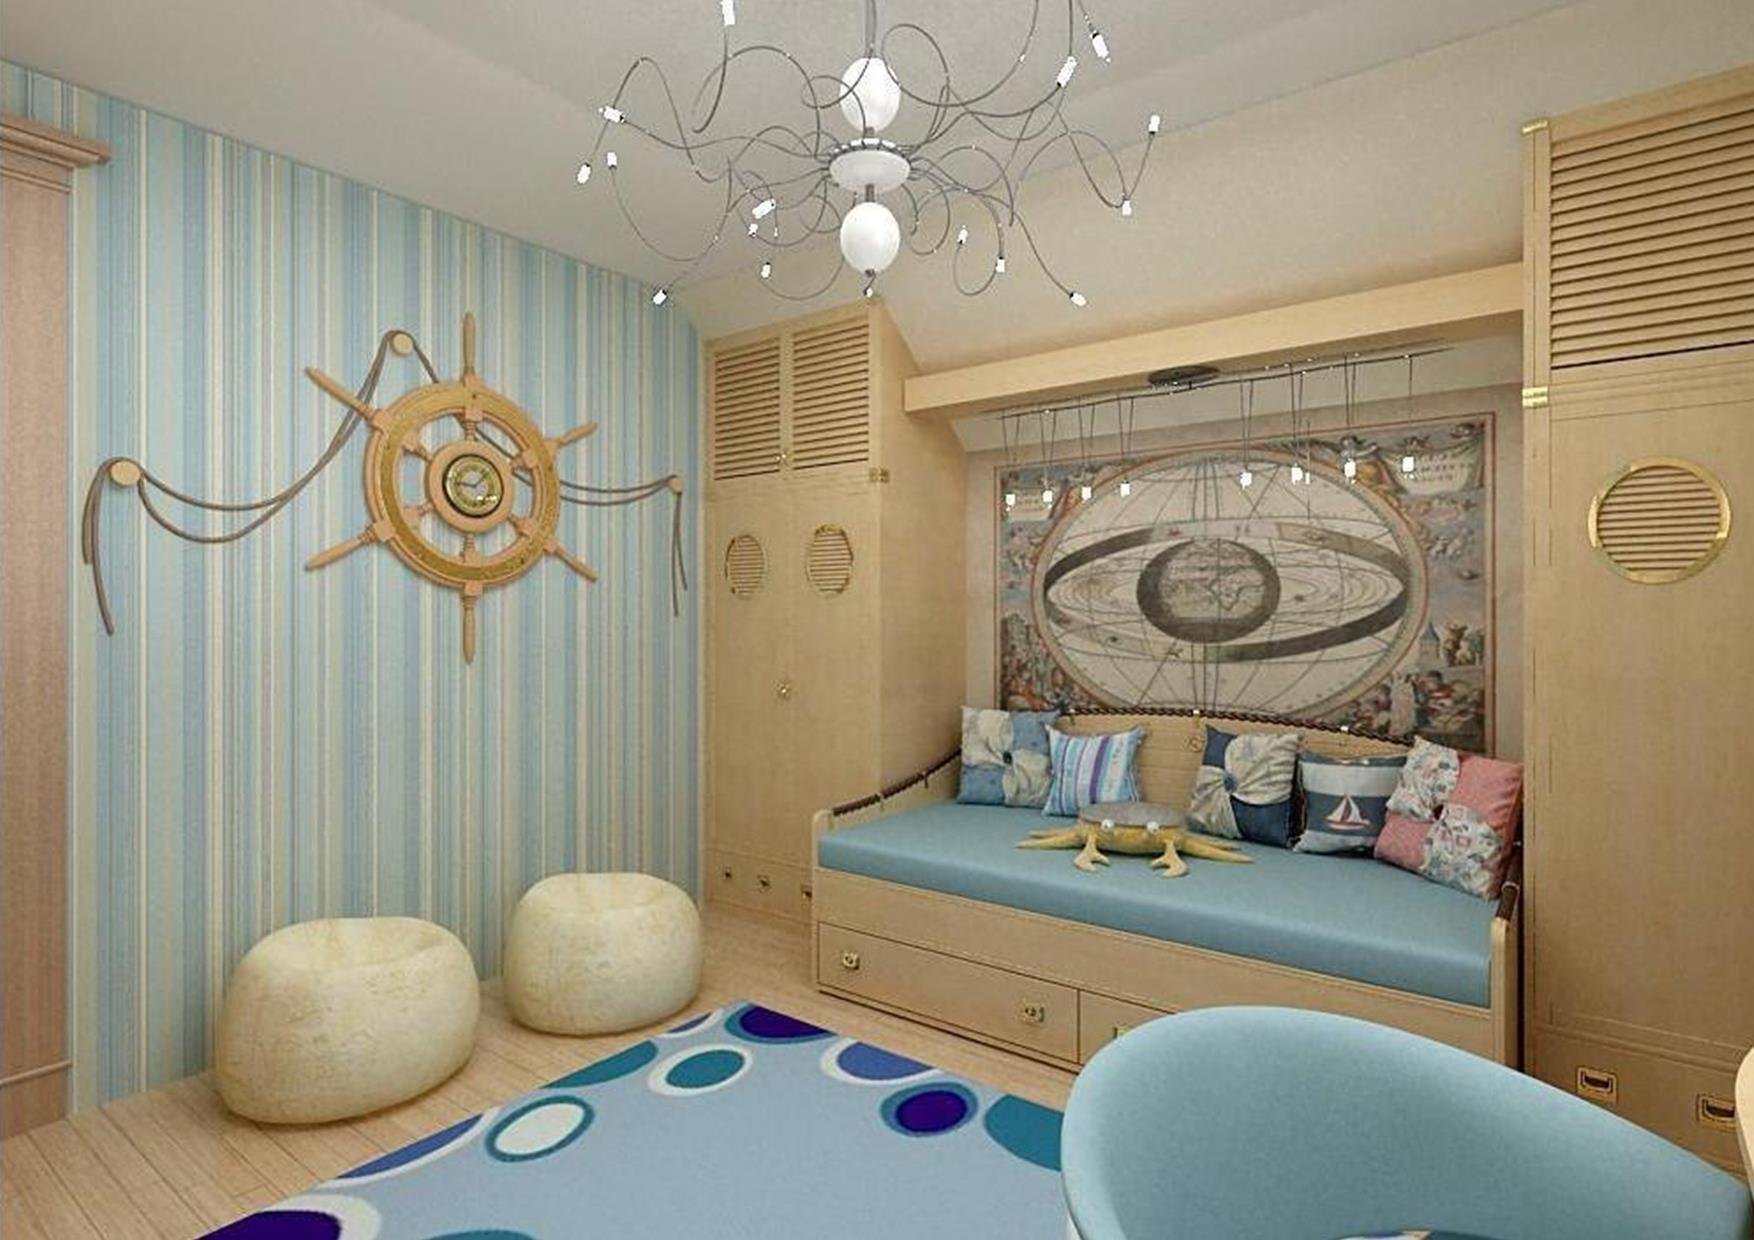 Стили детских интерьеров. Детская в морском стиле. Детская комната в морском стиле. Морской стиль в интерьере. Комната в морском стиле для мальчика.